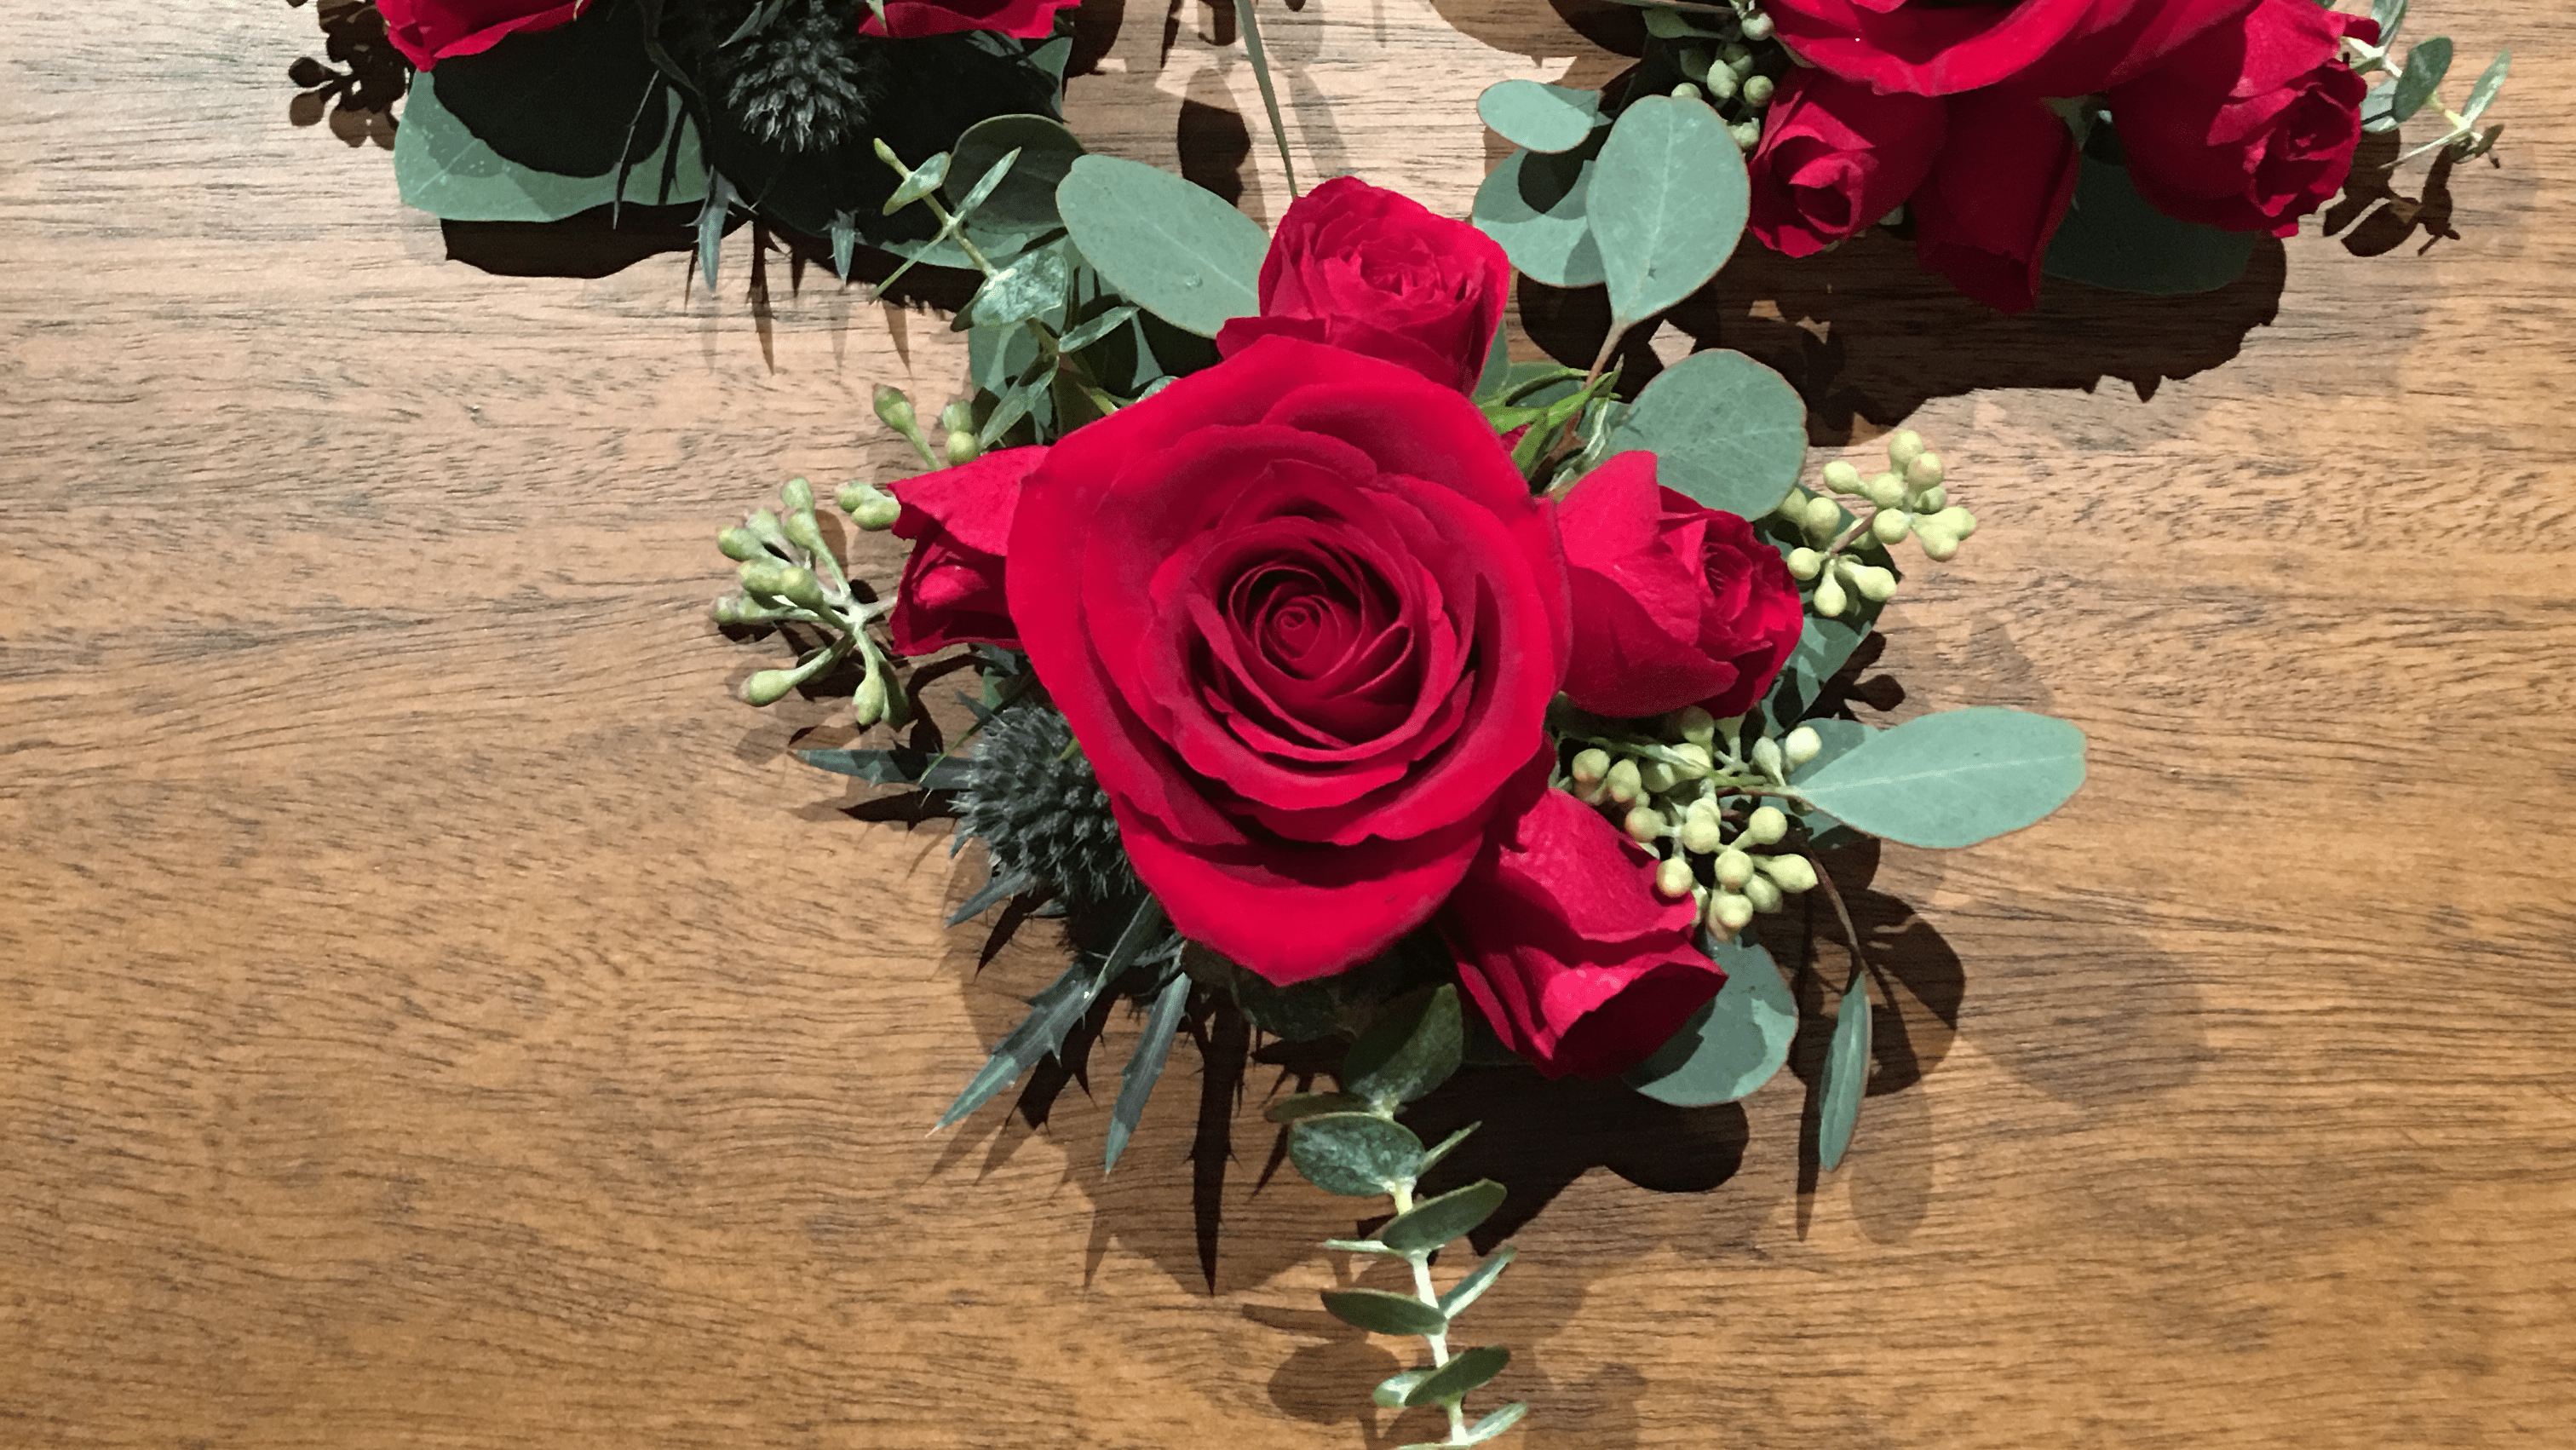 Petals - Flowers/Florist - Fresno, CA, US, the flower basket